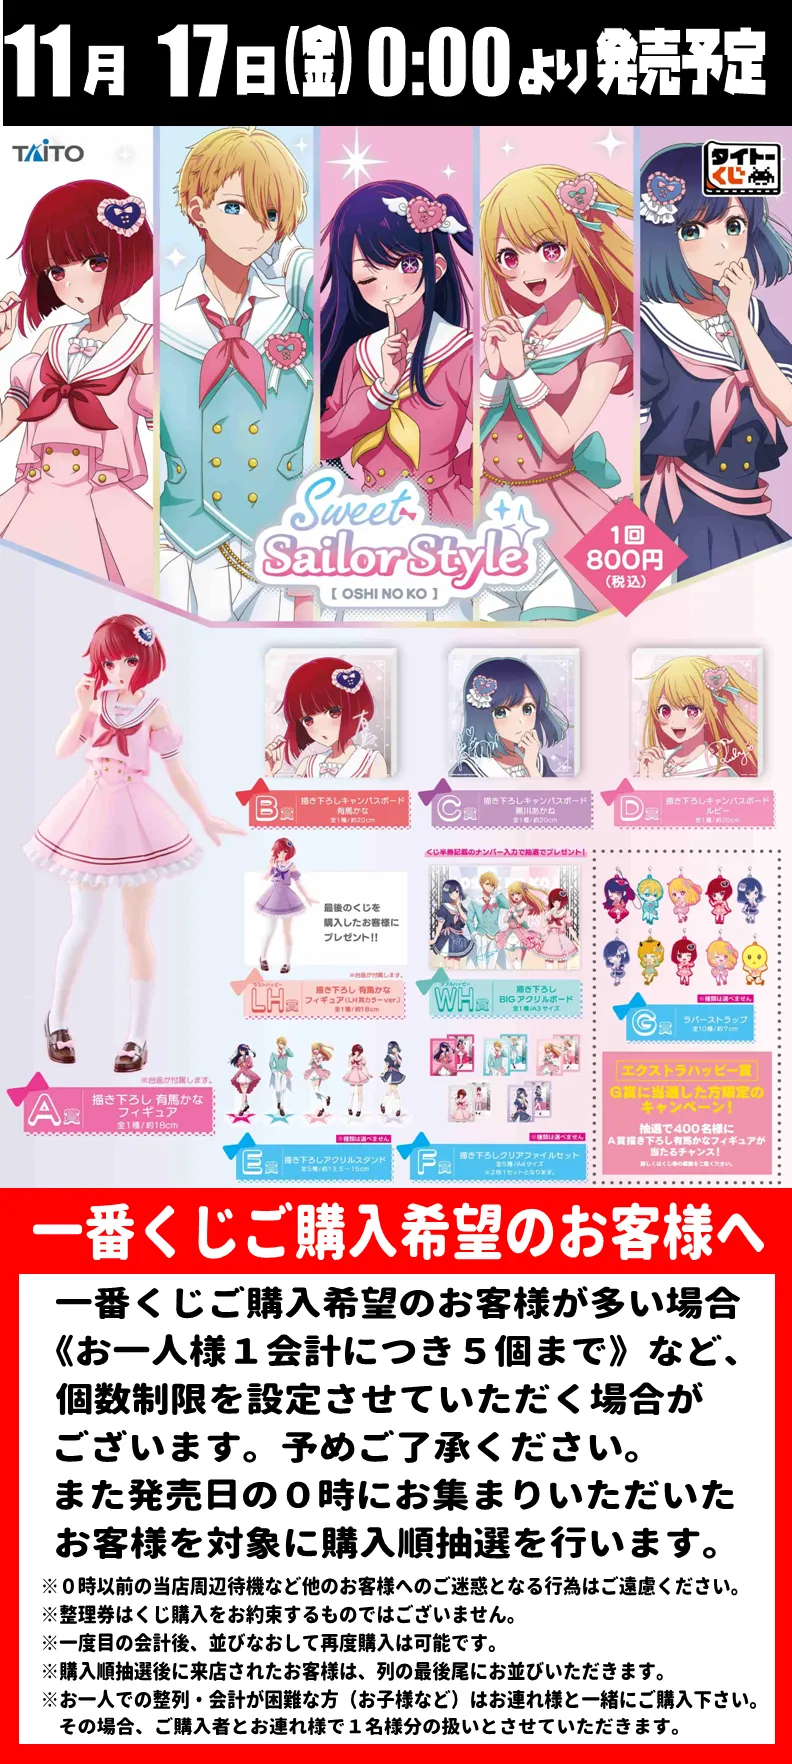 タイトーくじ【推しの子 Sweet Sailor Style】 | Information | 熊本市 